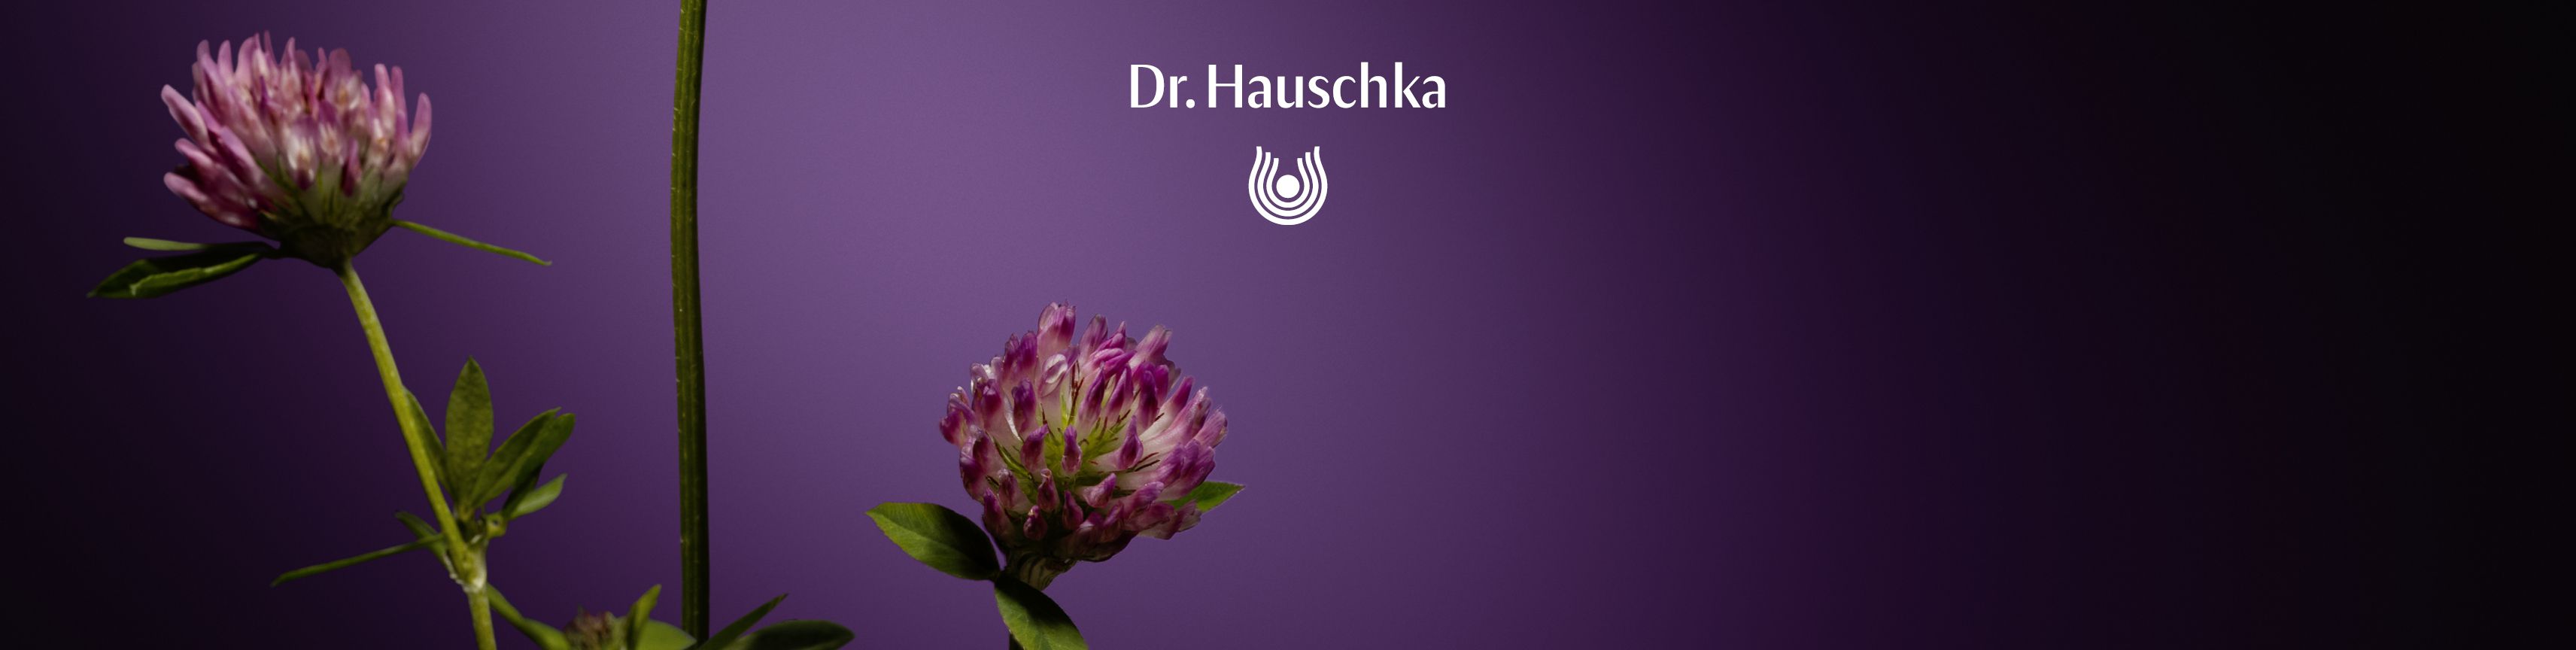 Dr. Hauschka Sortiment